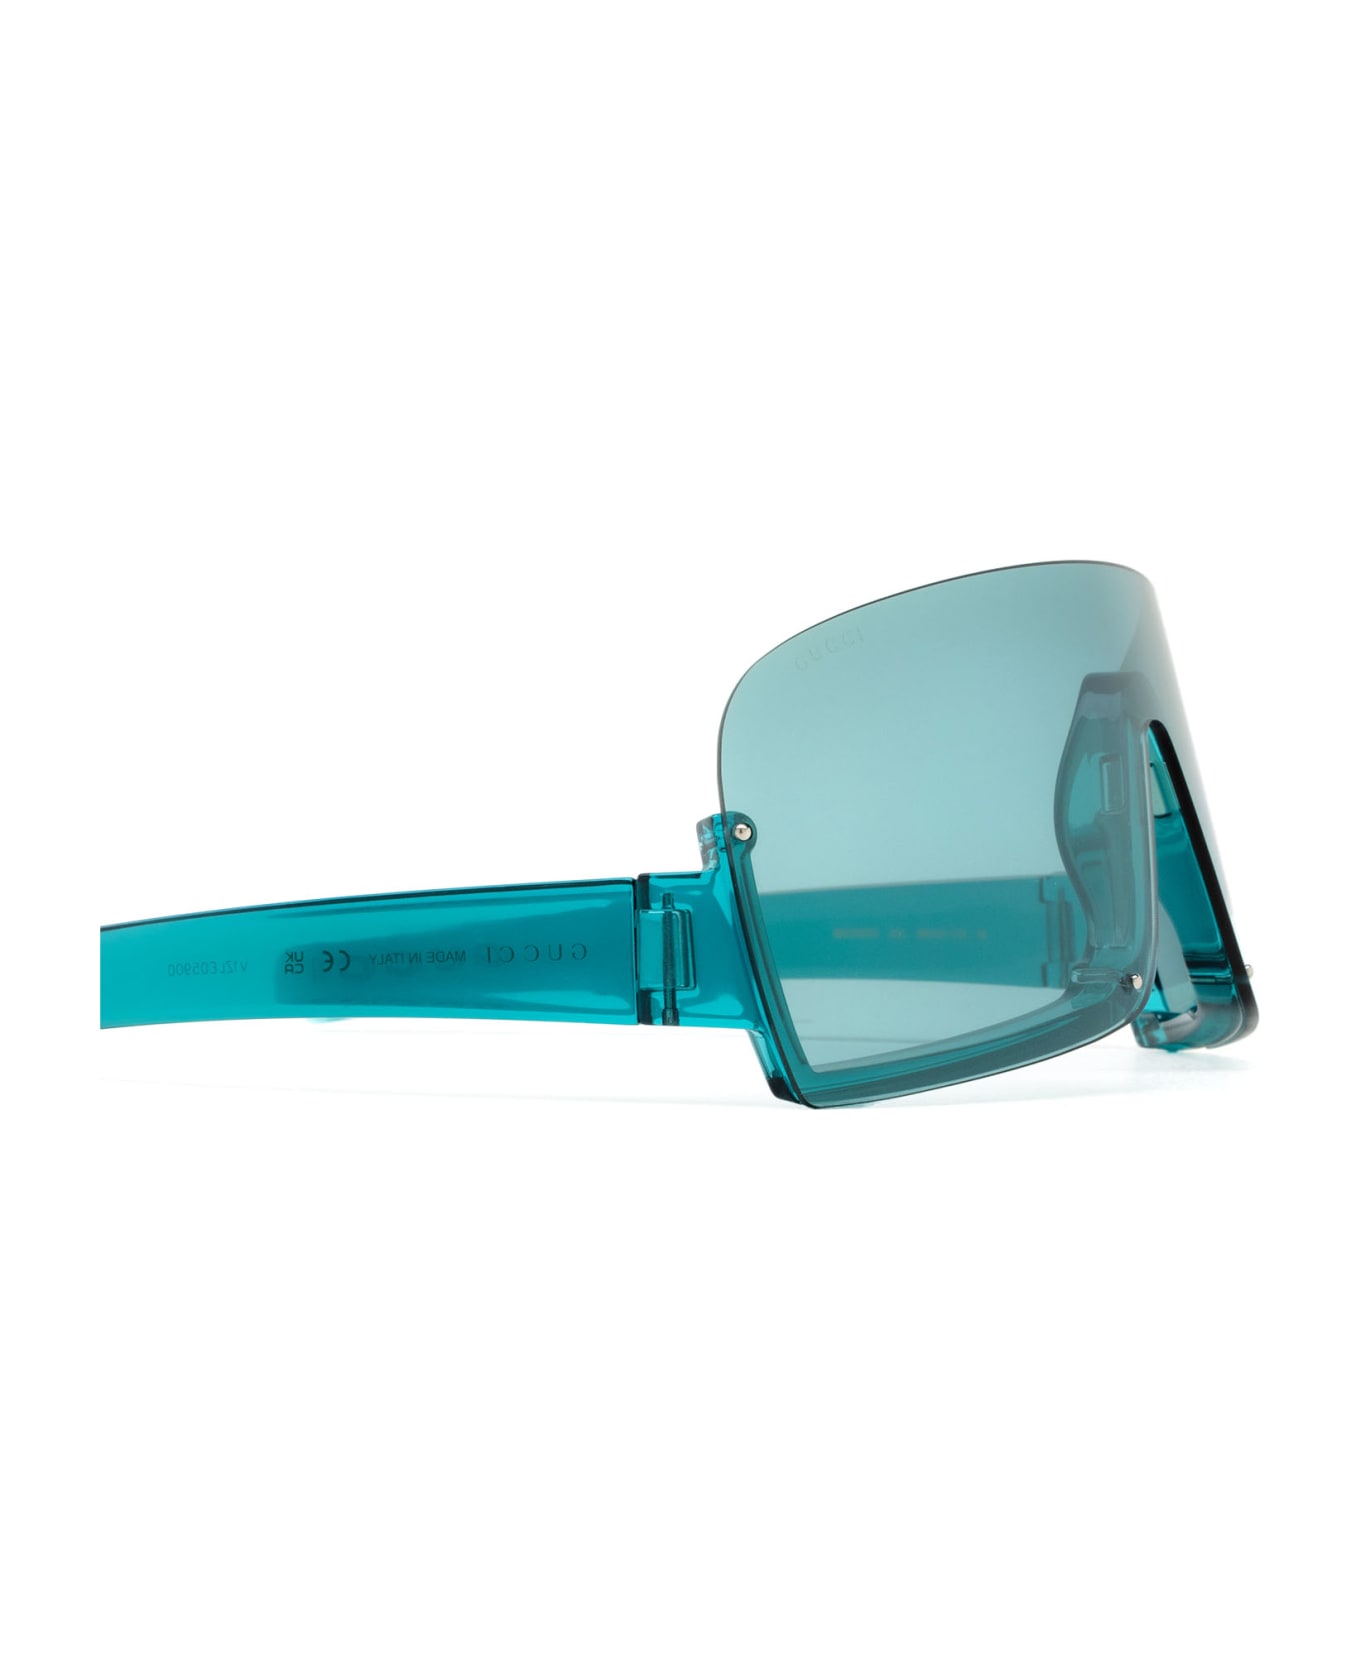 Gucci Eyewear Gg1637s Light Blue Sunglasses - Light Blue